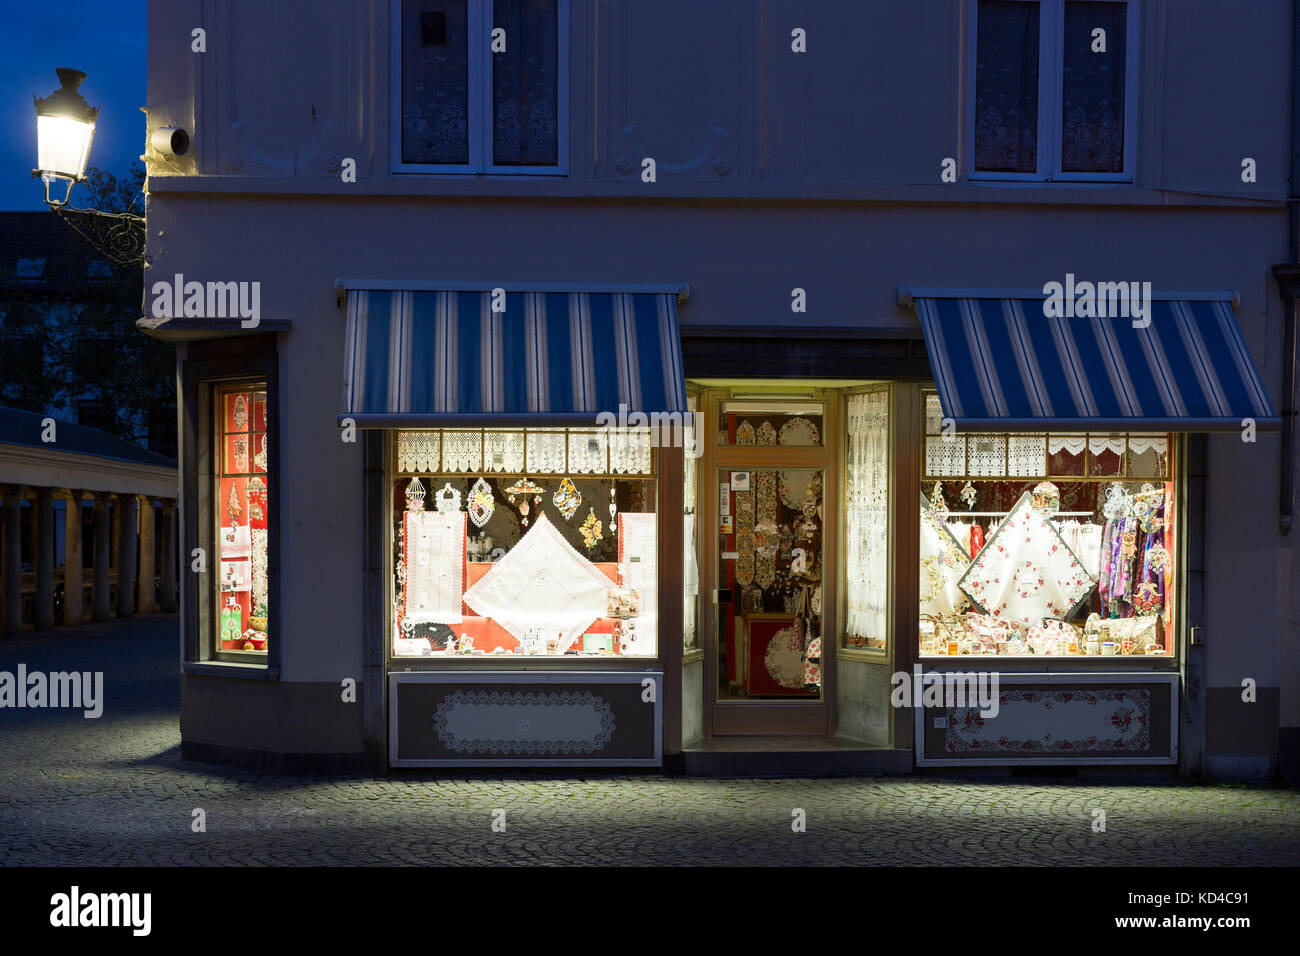 Schaufenster der traditionellen Spitze und Leinen Geschenke und Souvenirs  im Shop in Brügge, Belgien Stockfotografie - Alamy